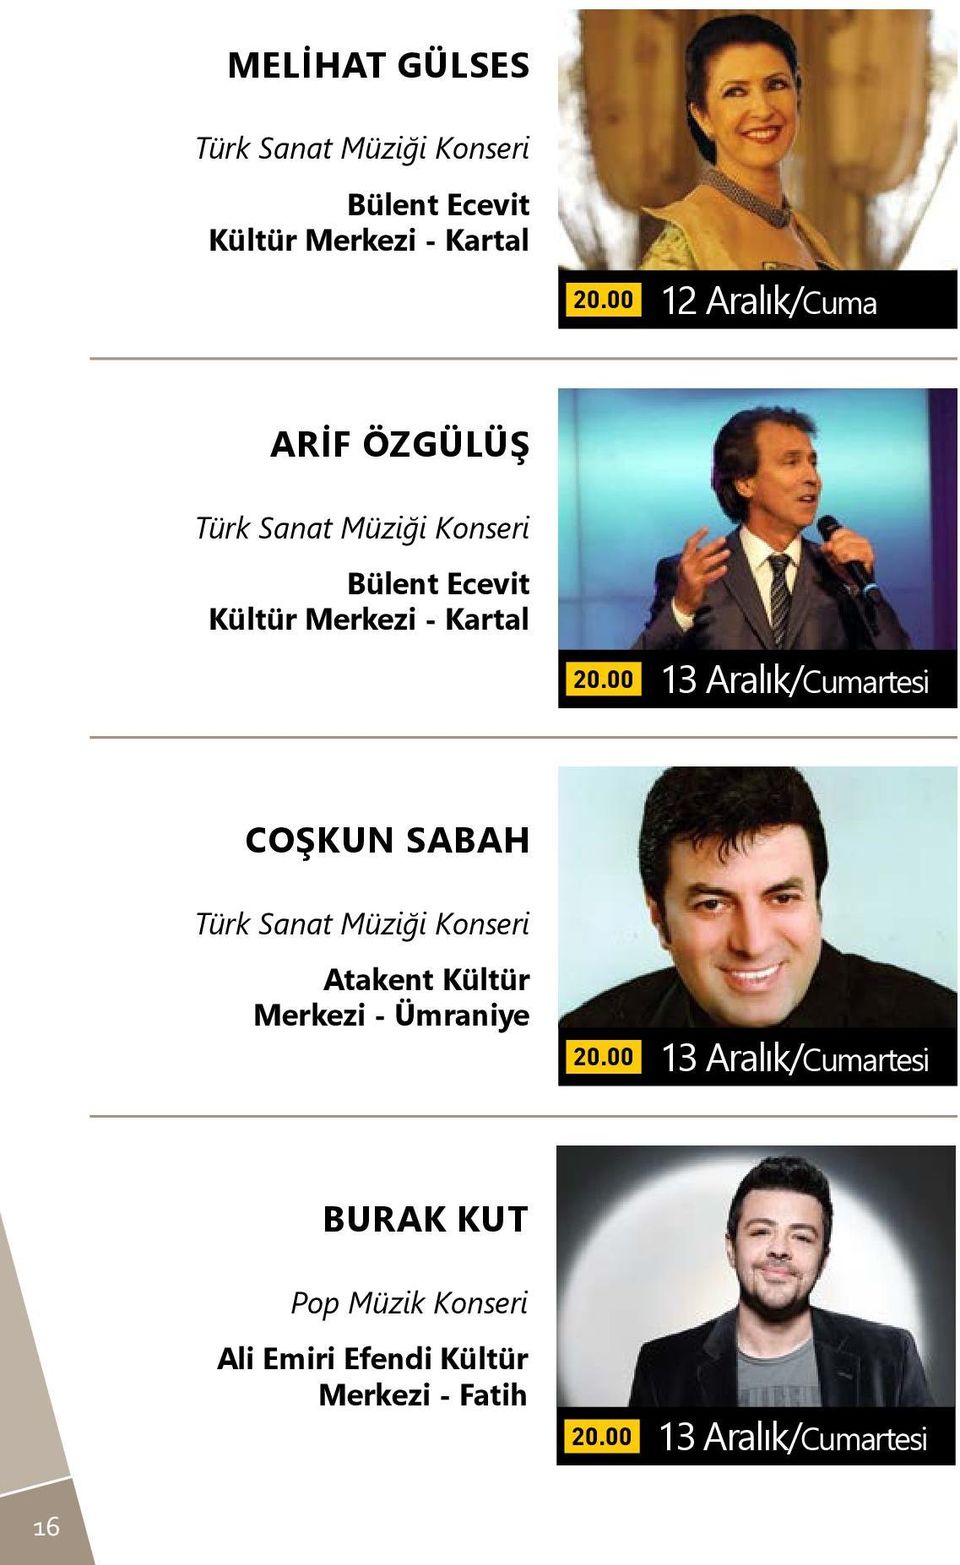 Aralık/Cumartesi Coşkun Sabah Türk Sanat Müziği Konseri Atakent Kültür Merkezi - Ümraniye 13